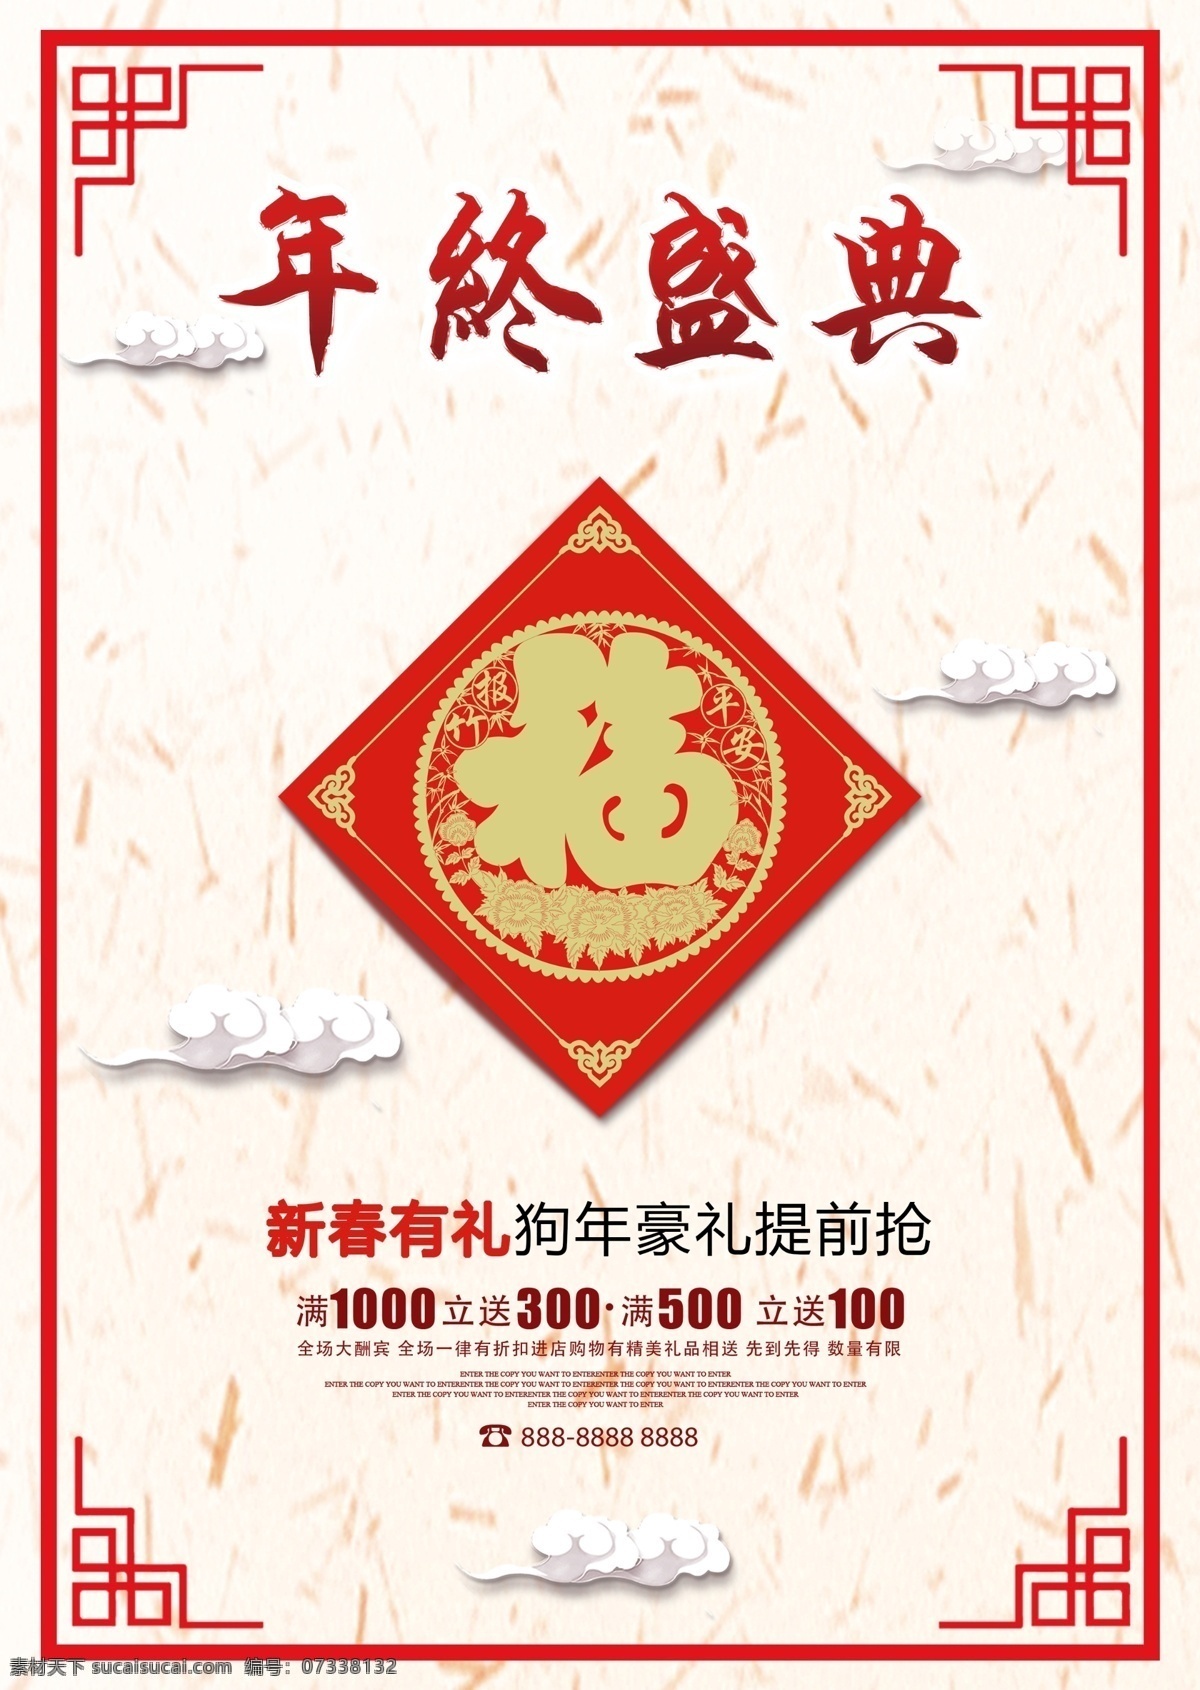 中国 风 年终 盛典 促销 海报 淘宝 红色 紫色 粉色 玫 背景 模板 天猫 活动 优惠 巻 模板下载